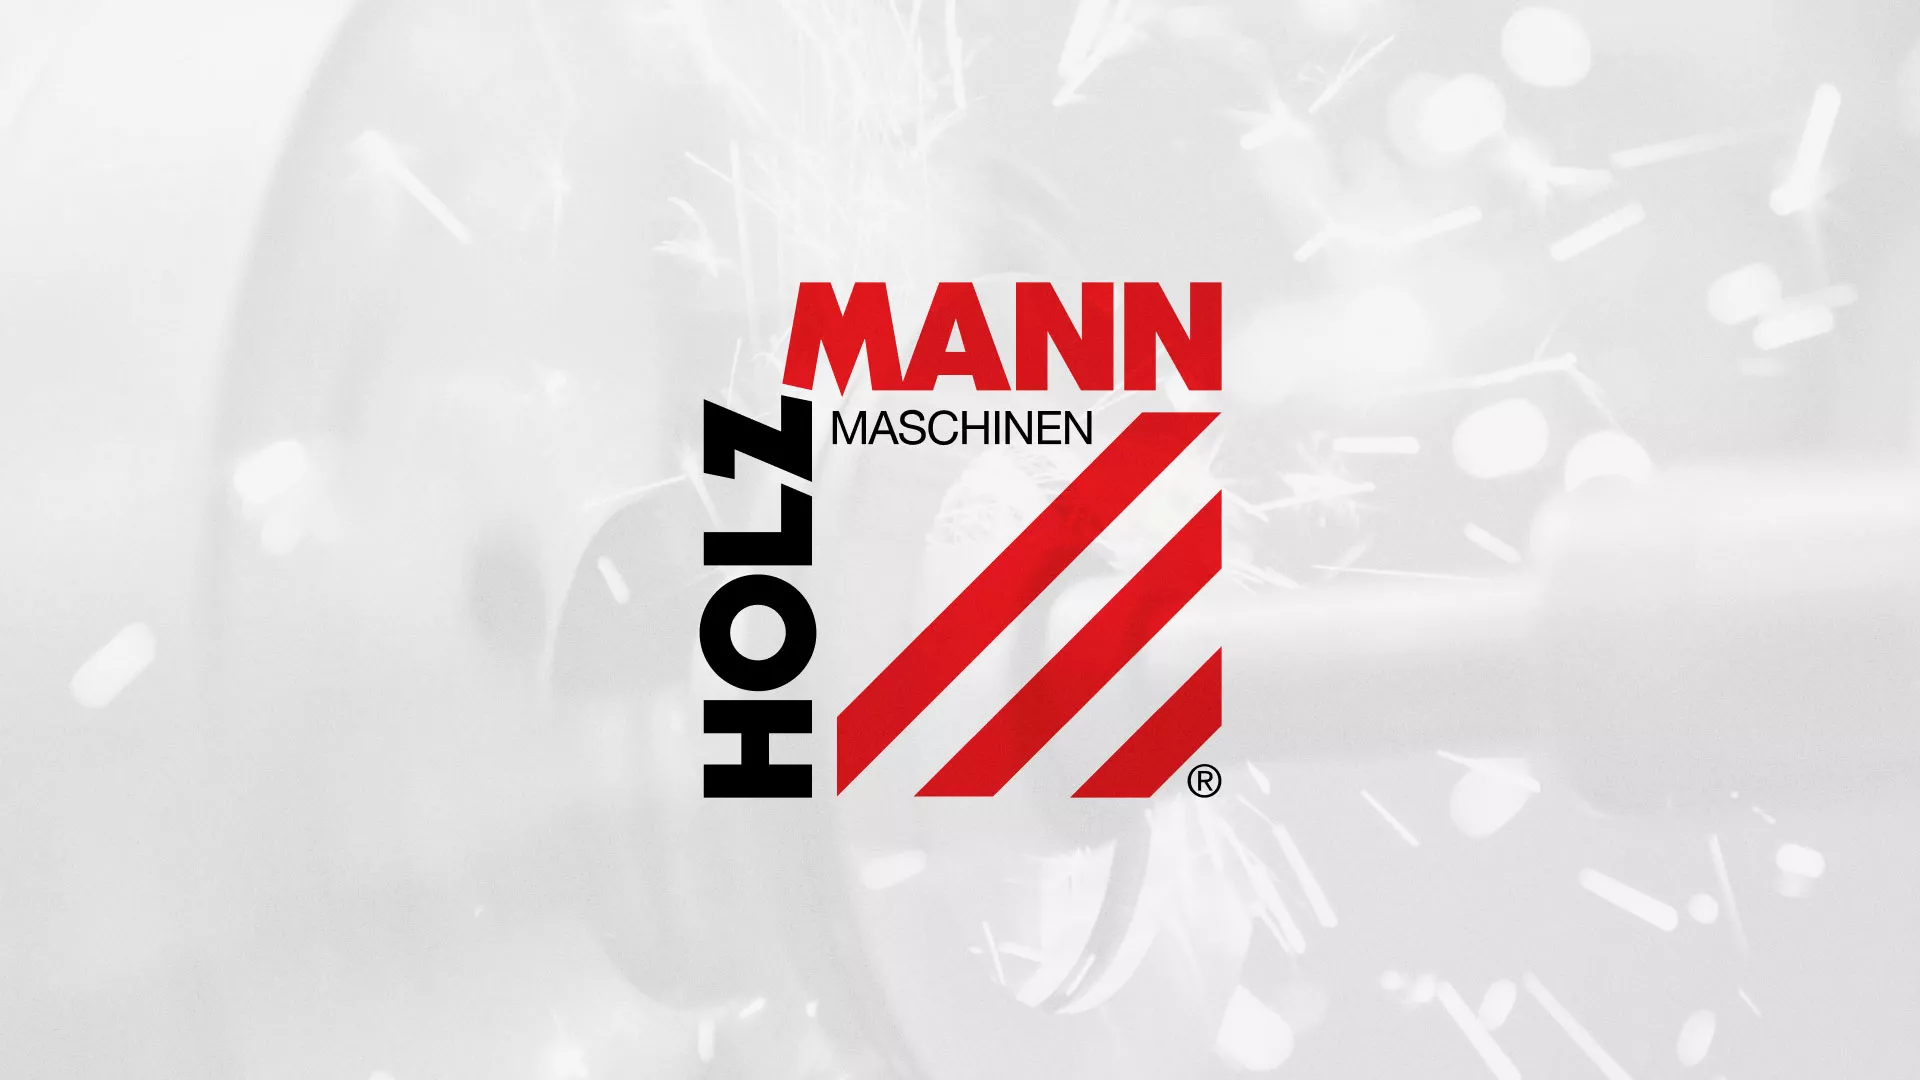 Создание сайта компании «HOLZMANN Maschinen GmbH» в Чебоксарах